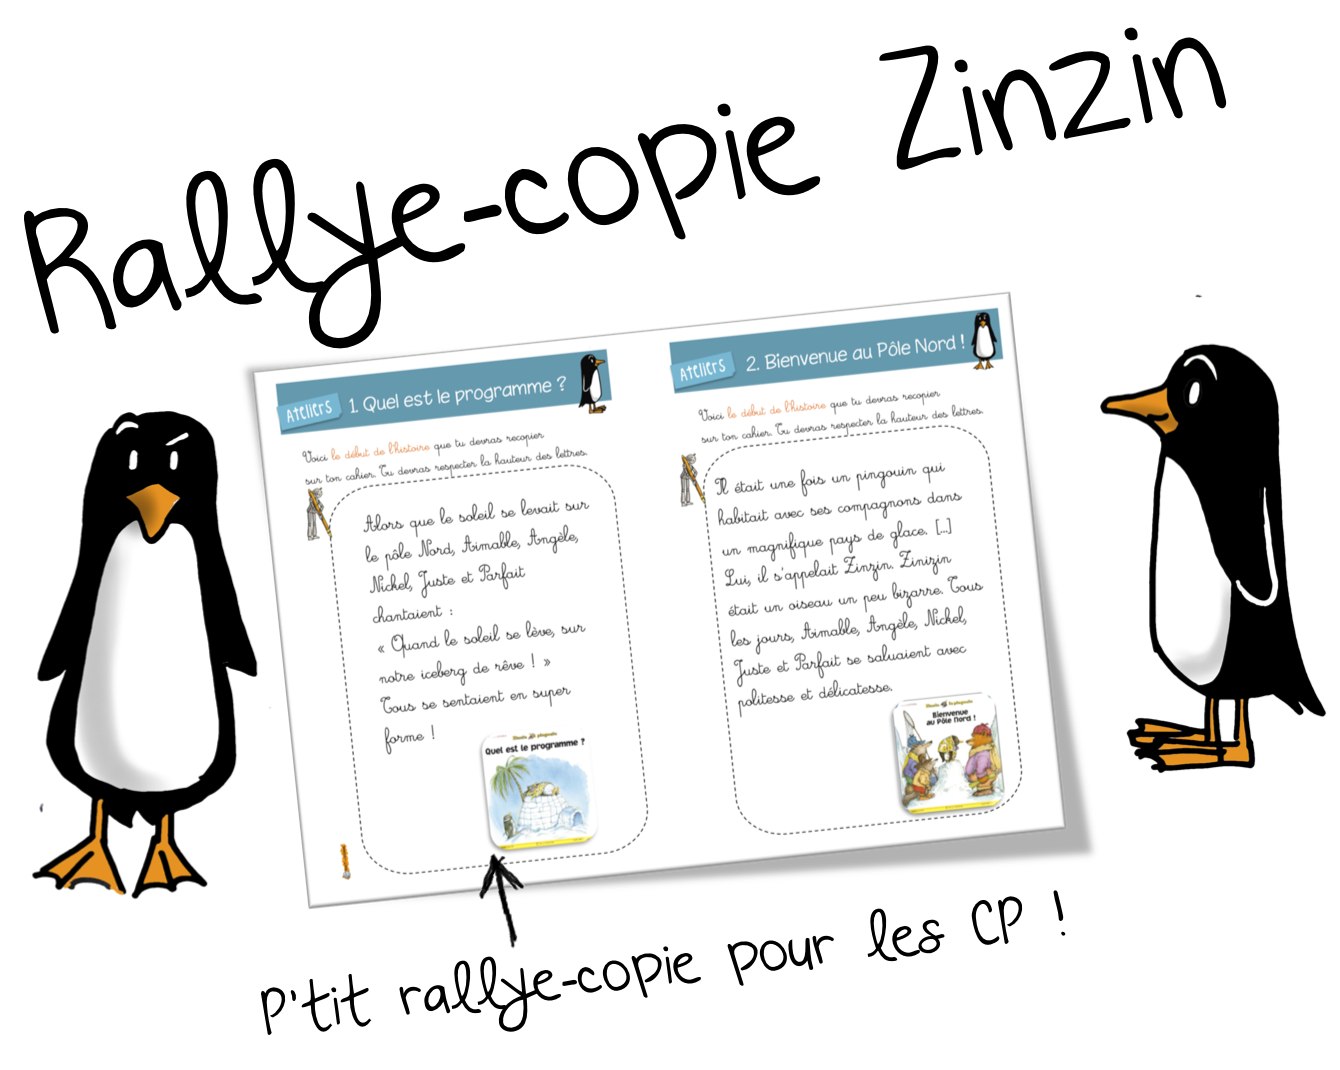 Rallye-copie Zinzin le pingouin